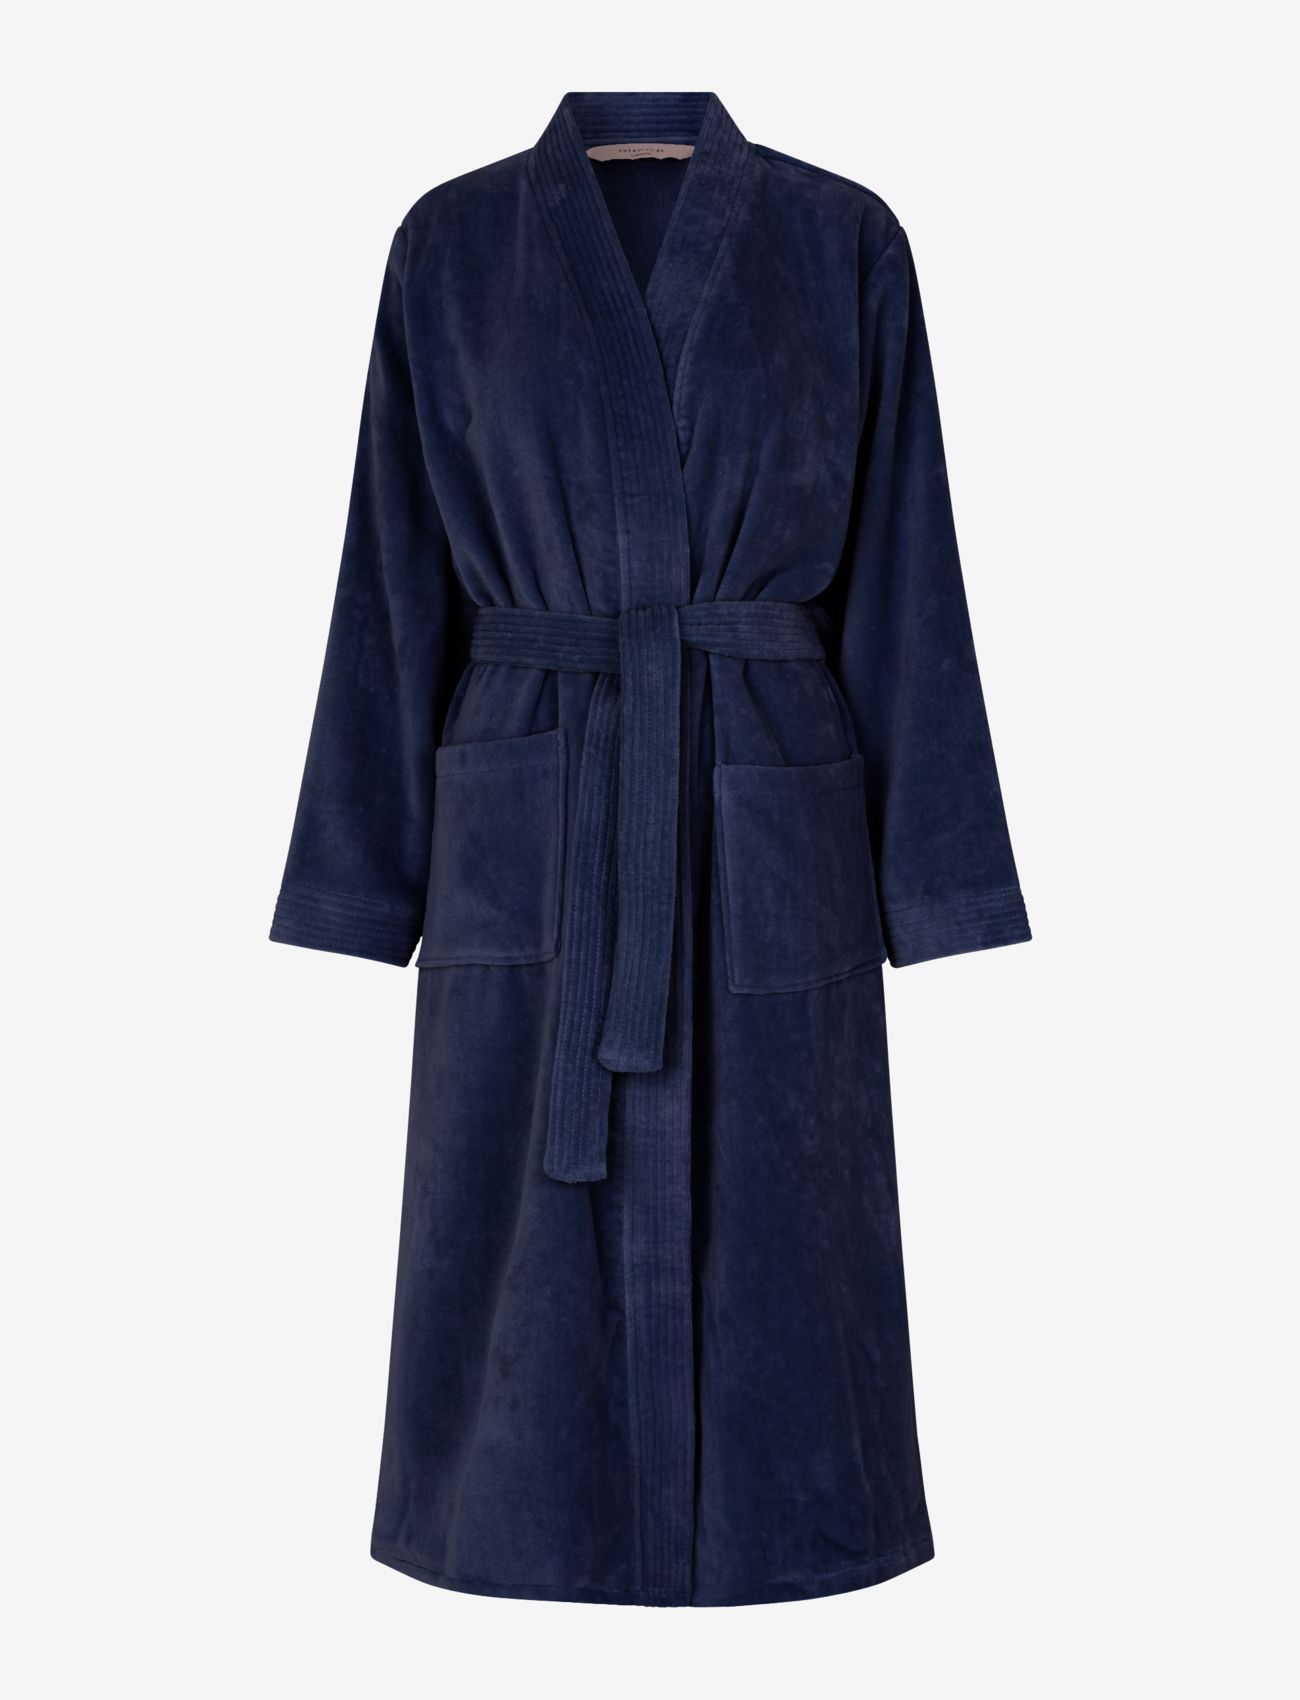 Rosemunde - Organic robe - birthday gifts - navy - 0